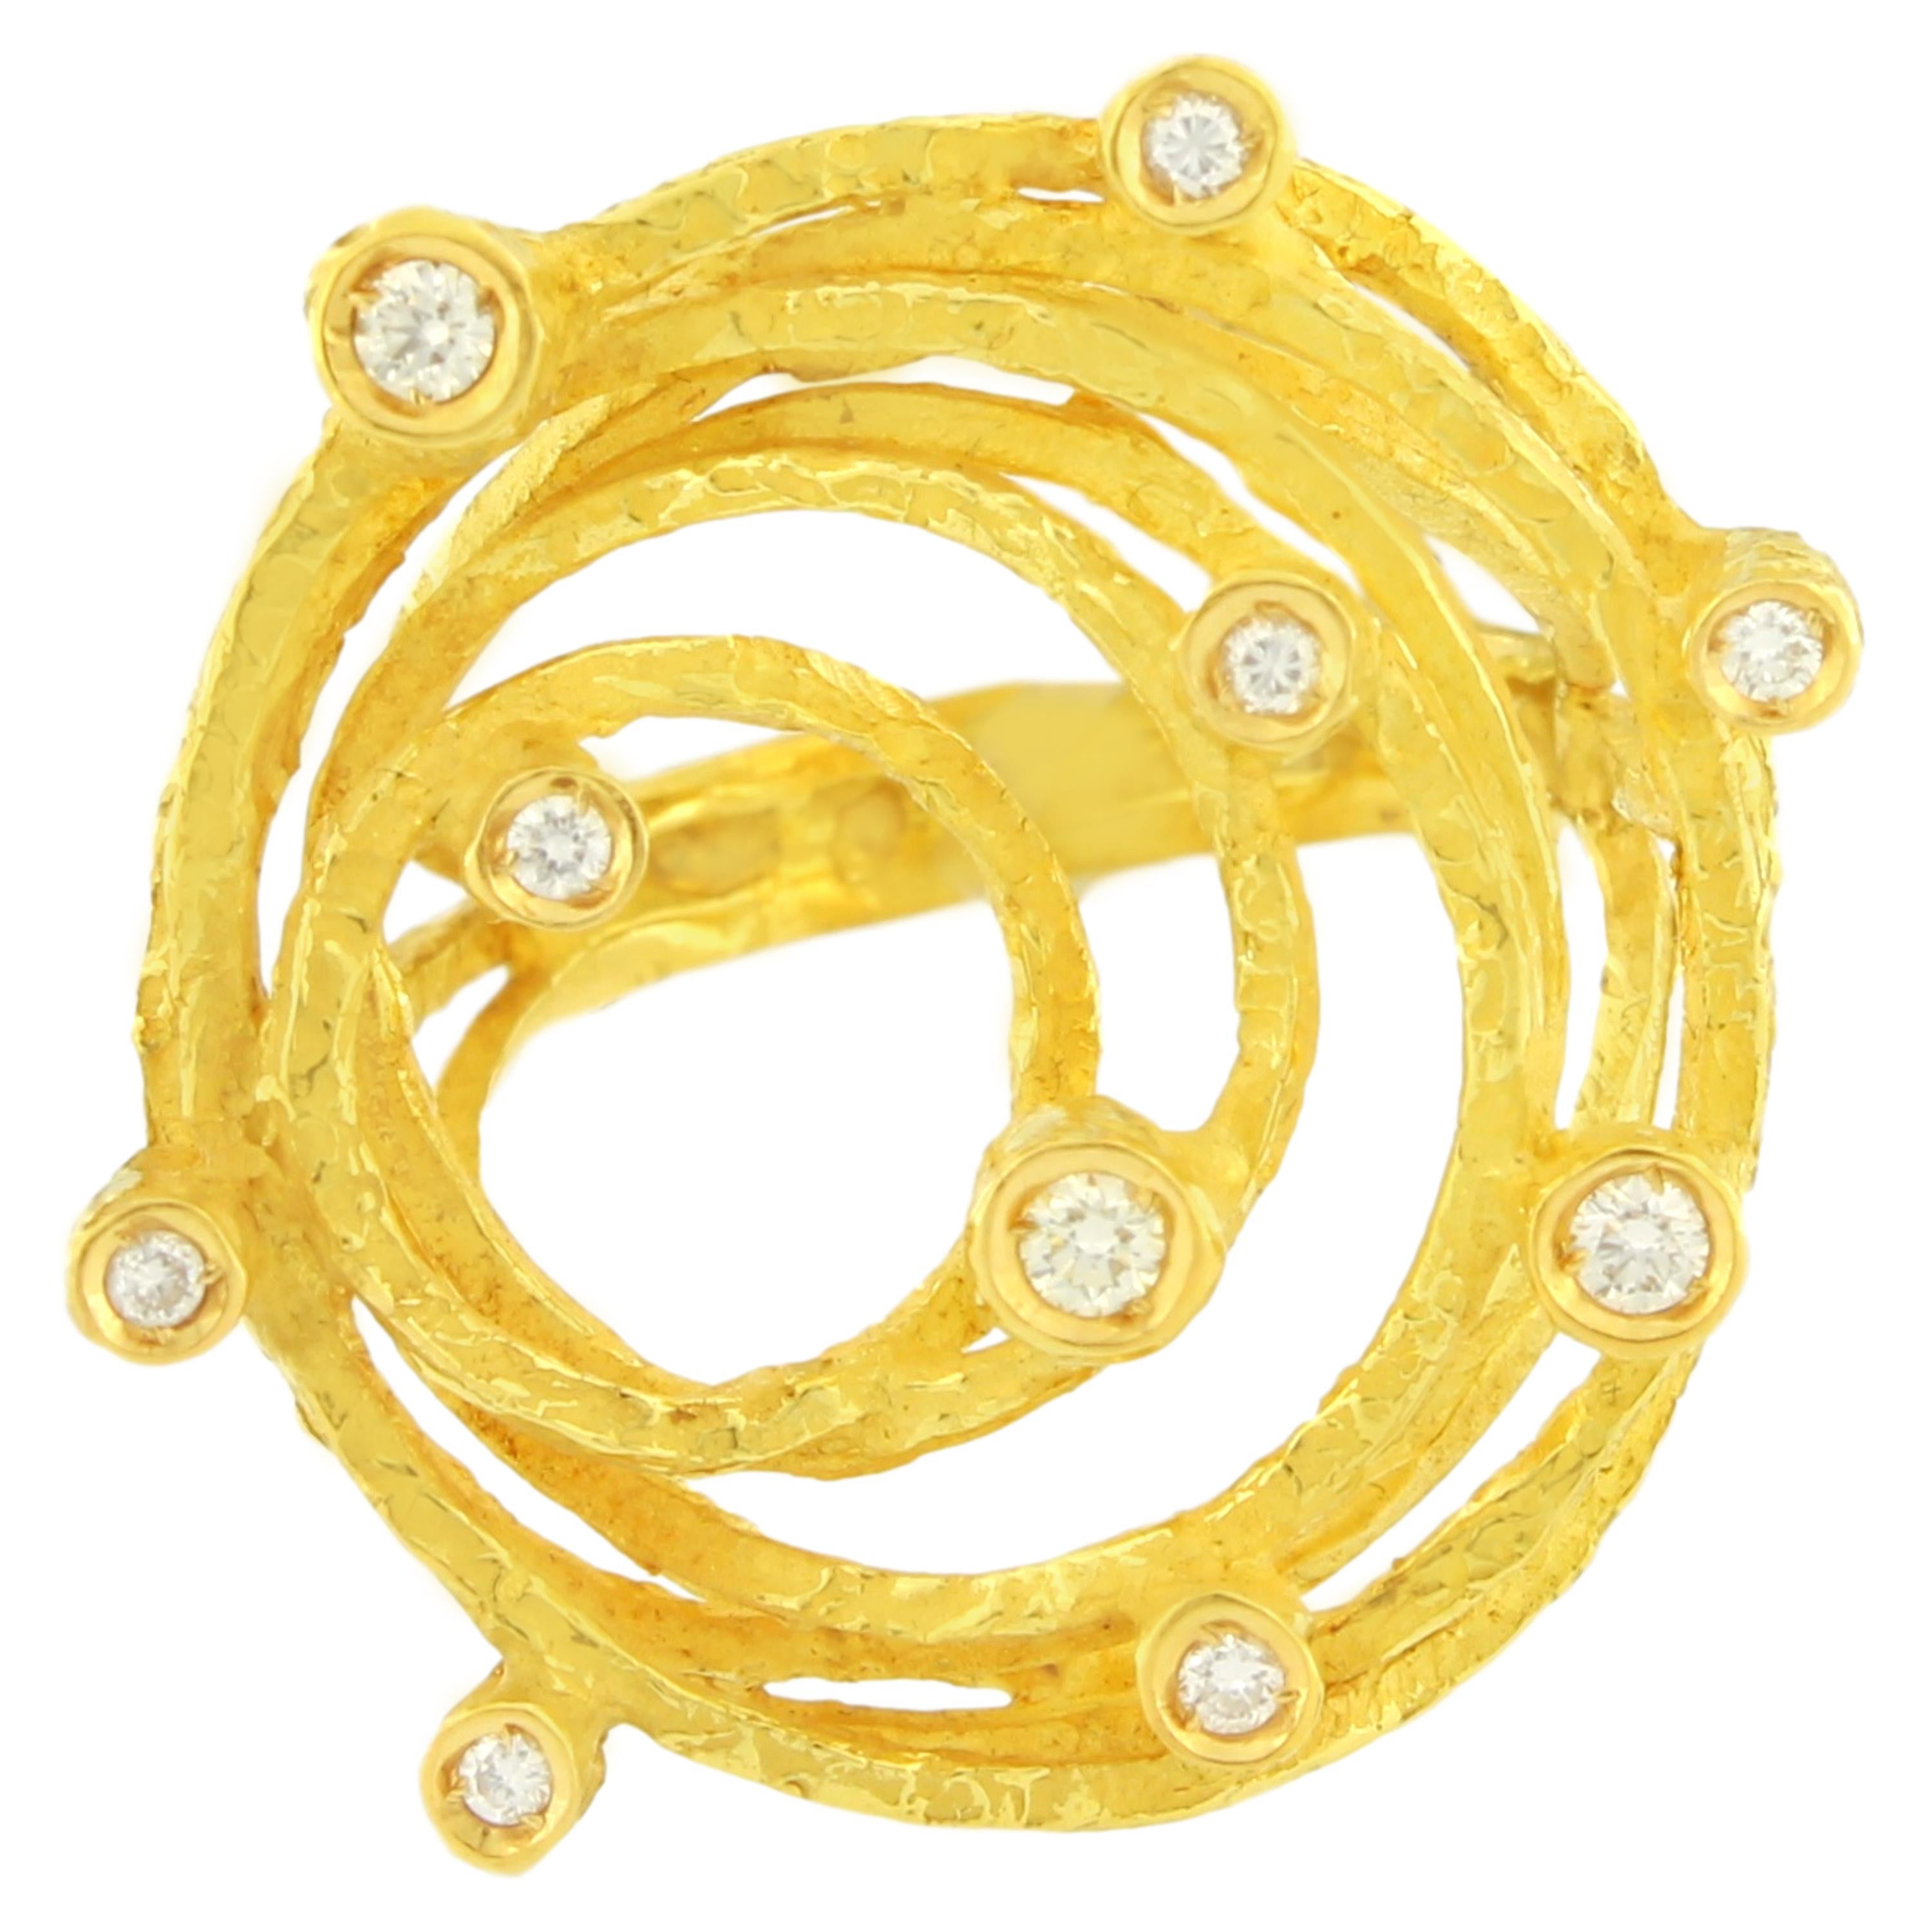 Sacchi Diamonds Gemstone 18 Karat Satin Yellow Gold Cocktail Ring